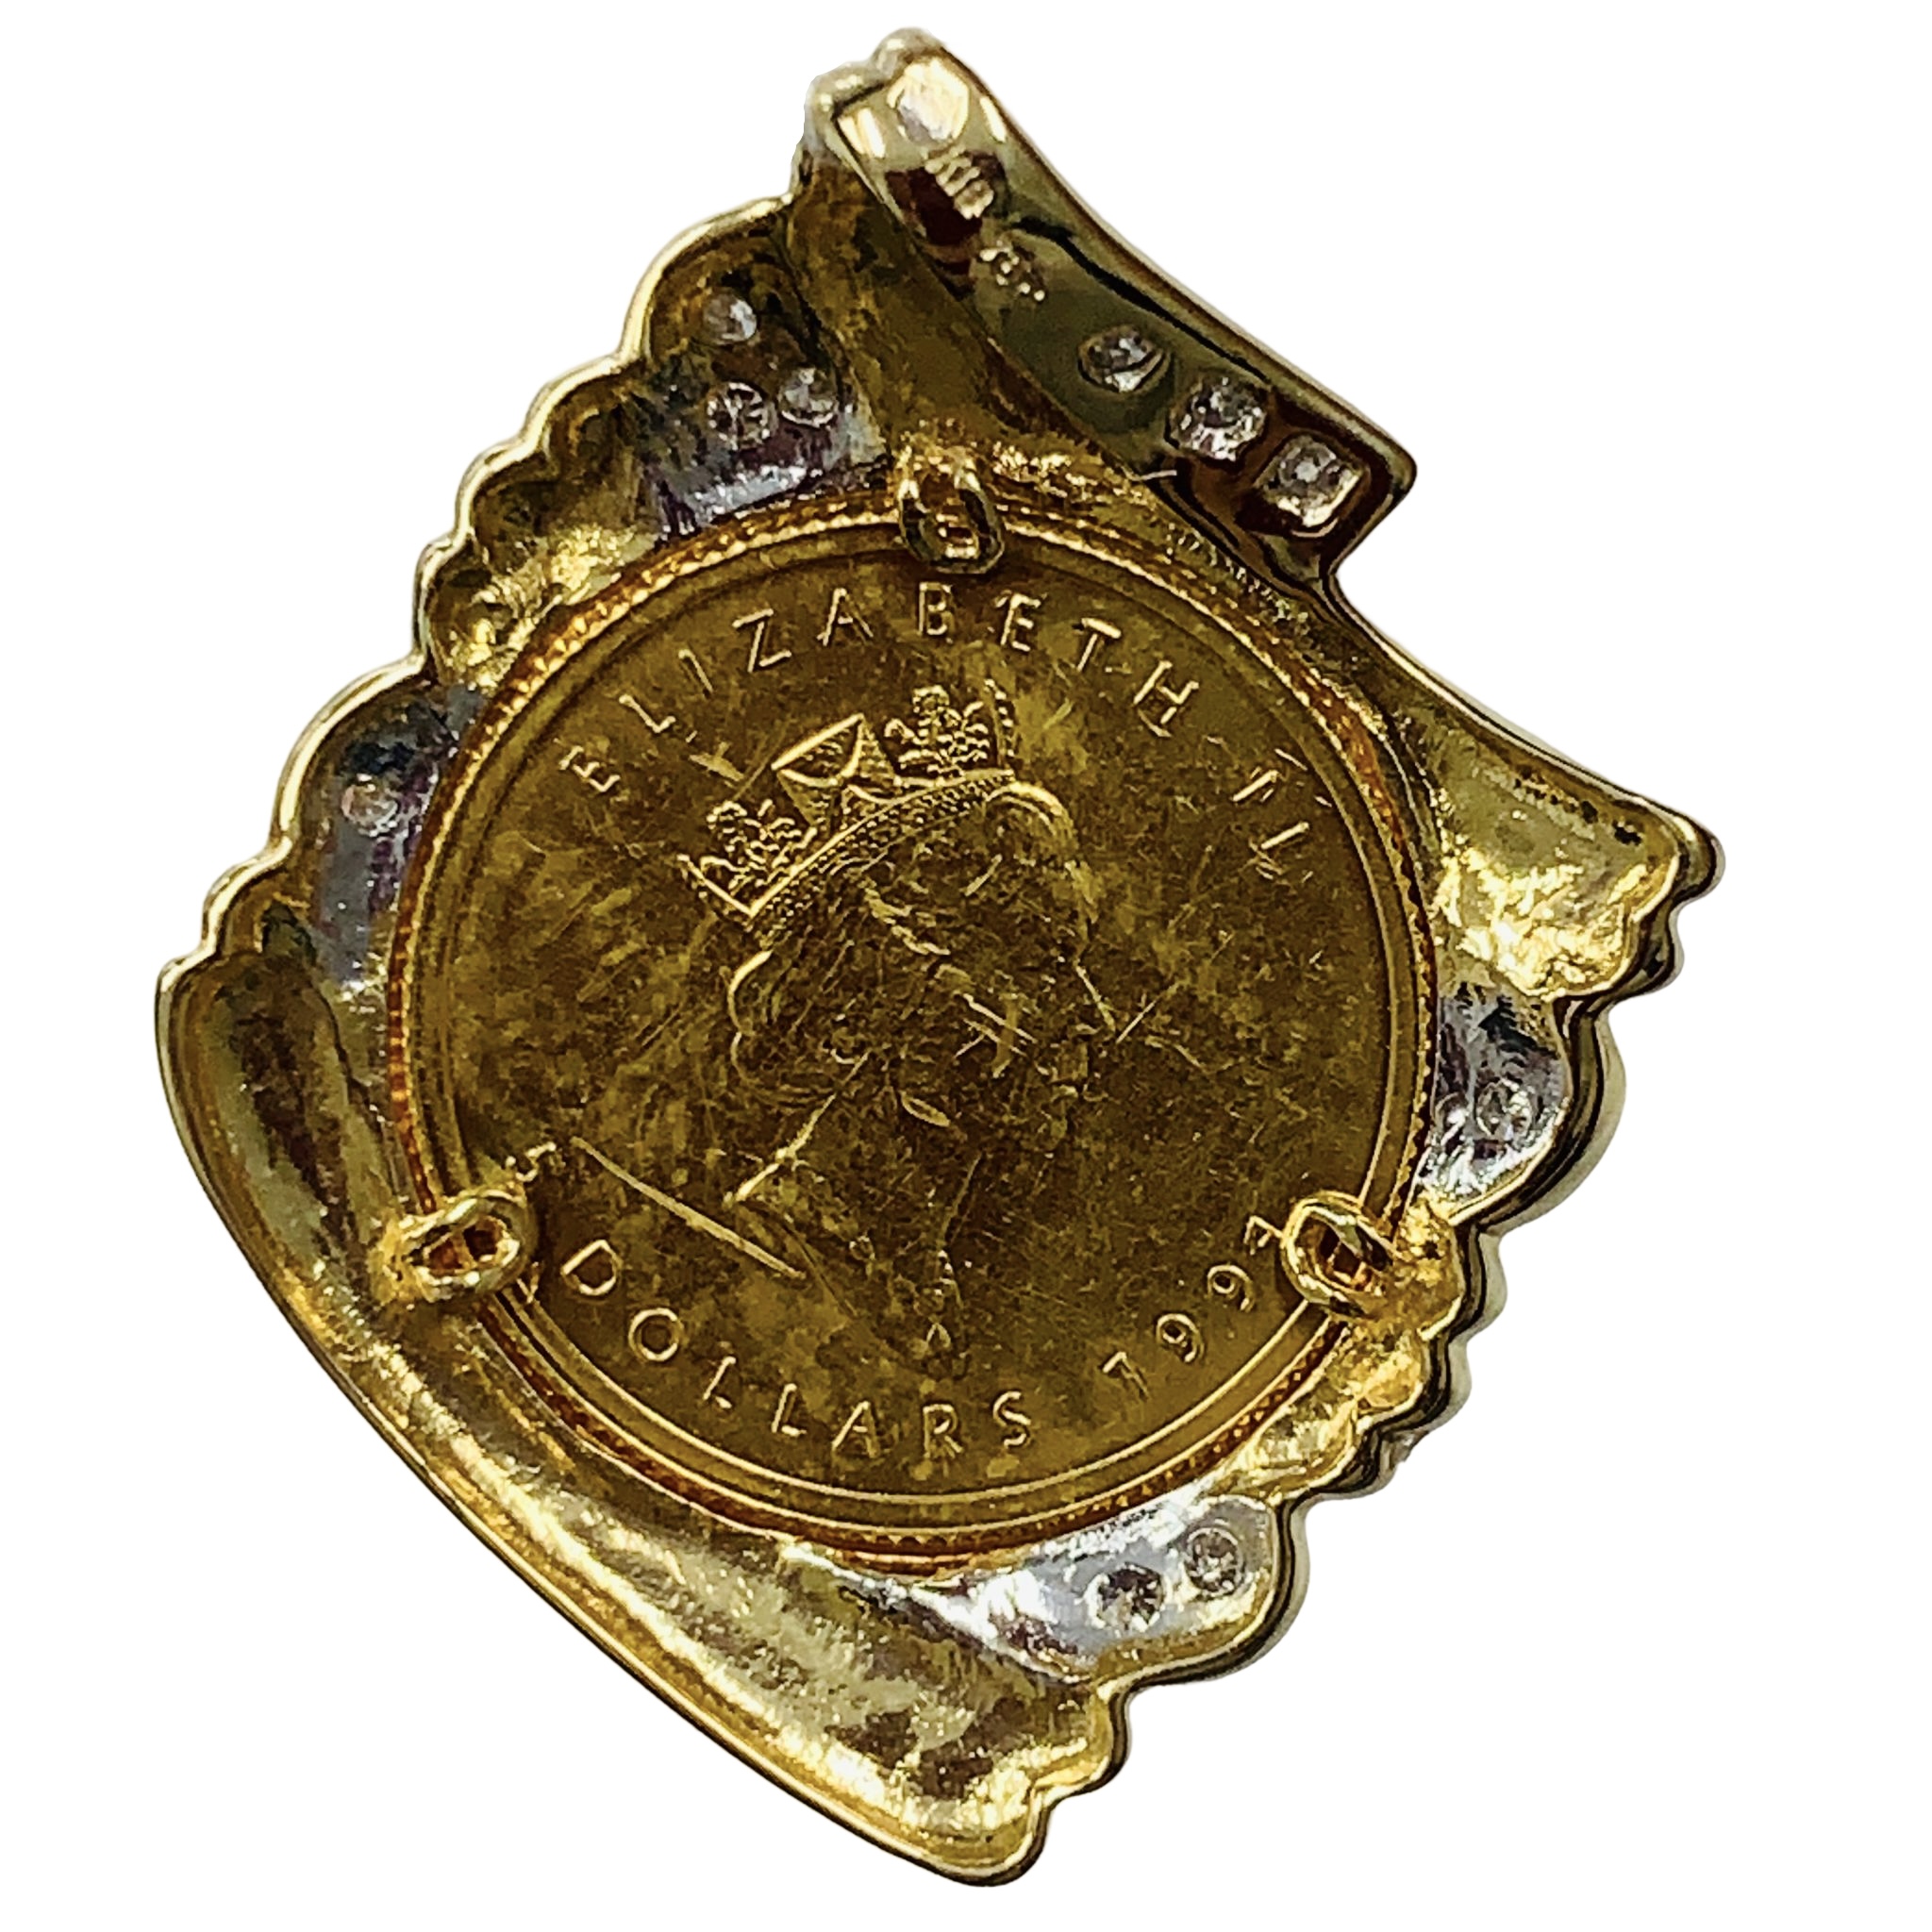 メープル金貨 カナダ エリザベス女王 コイン 純金 ダイヤモンド 1991年